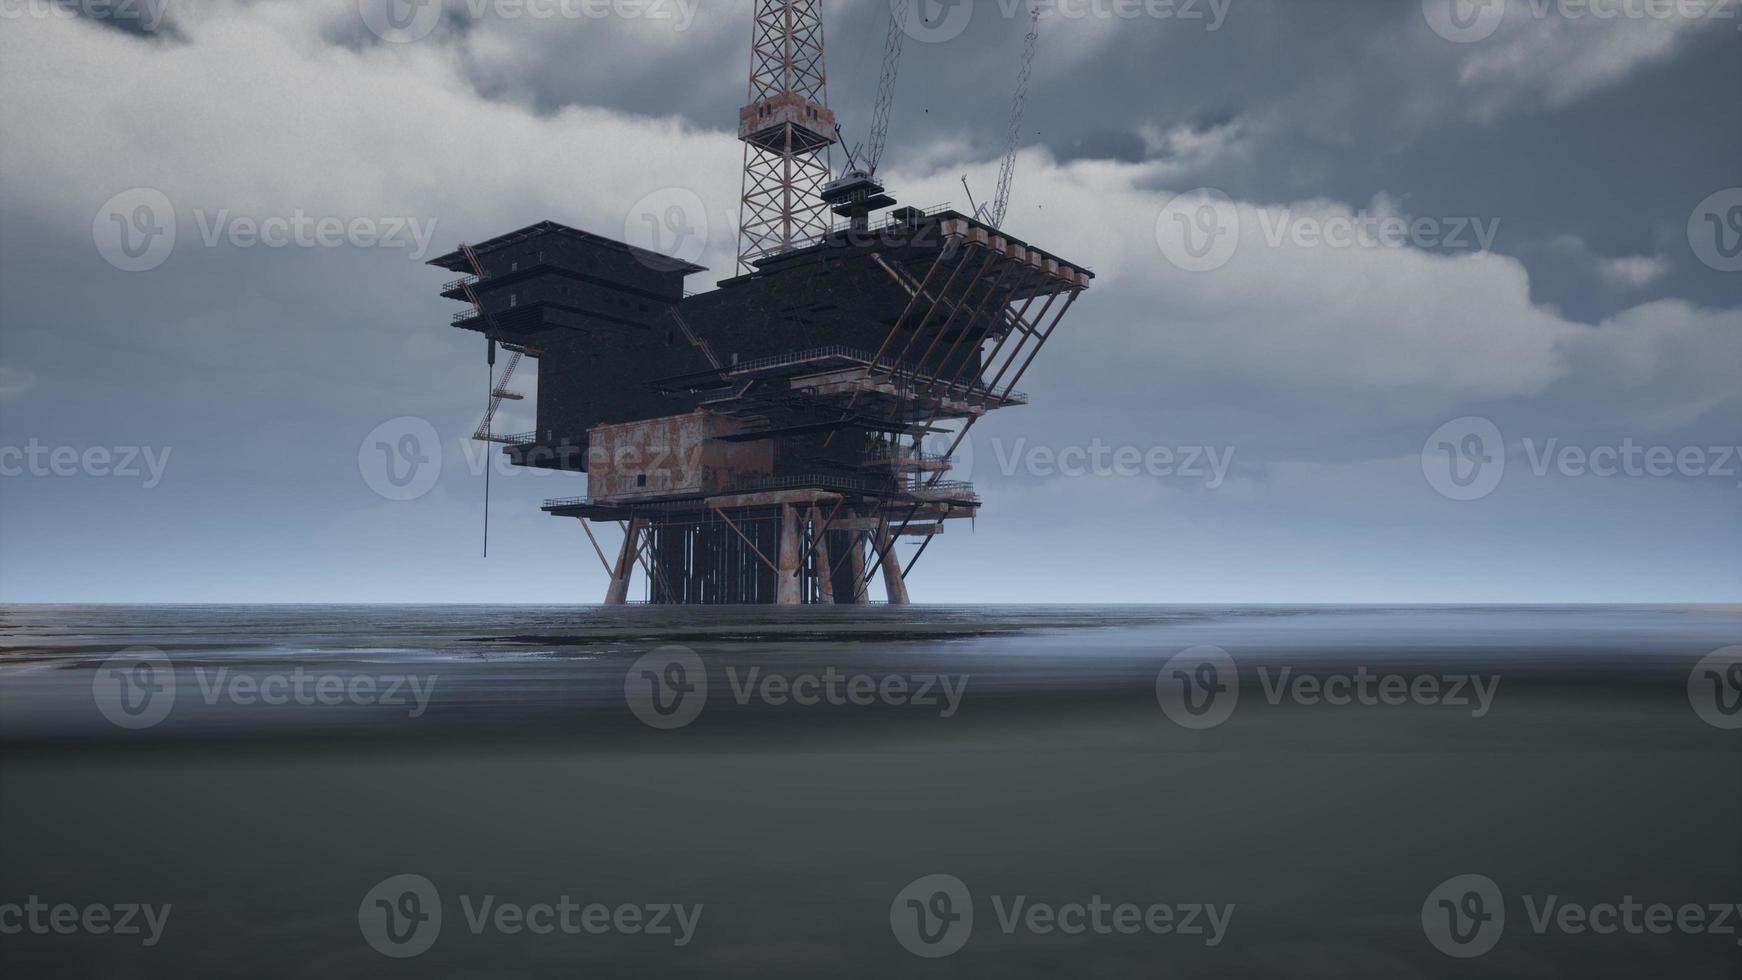 gran plataforma de perforación de plataformas petroleras en alta mar del océano pacífico foto